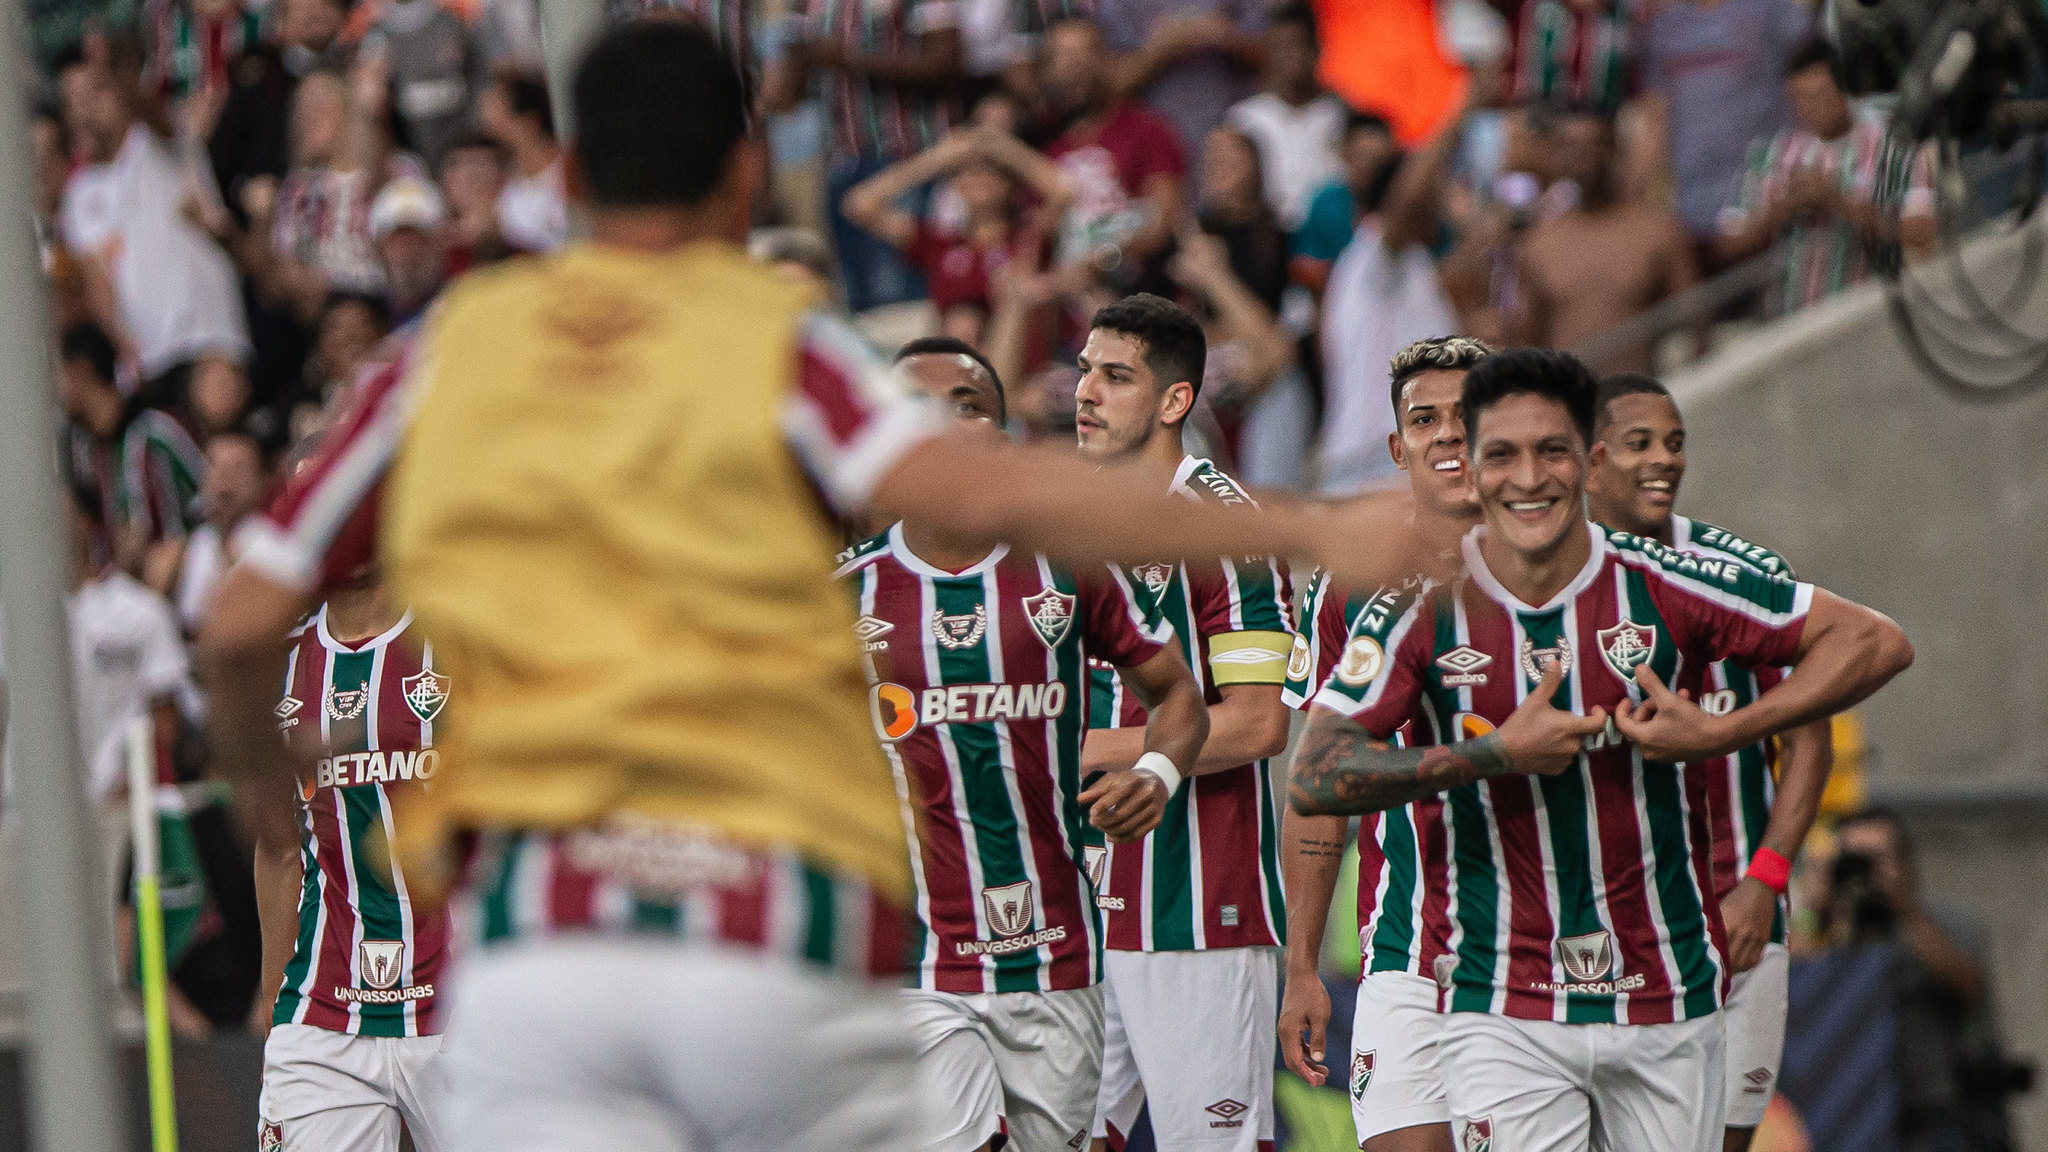 Cano repetindo o gesto de Fred, segundo maior artilheiro da história do Fluminense